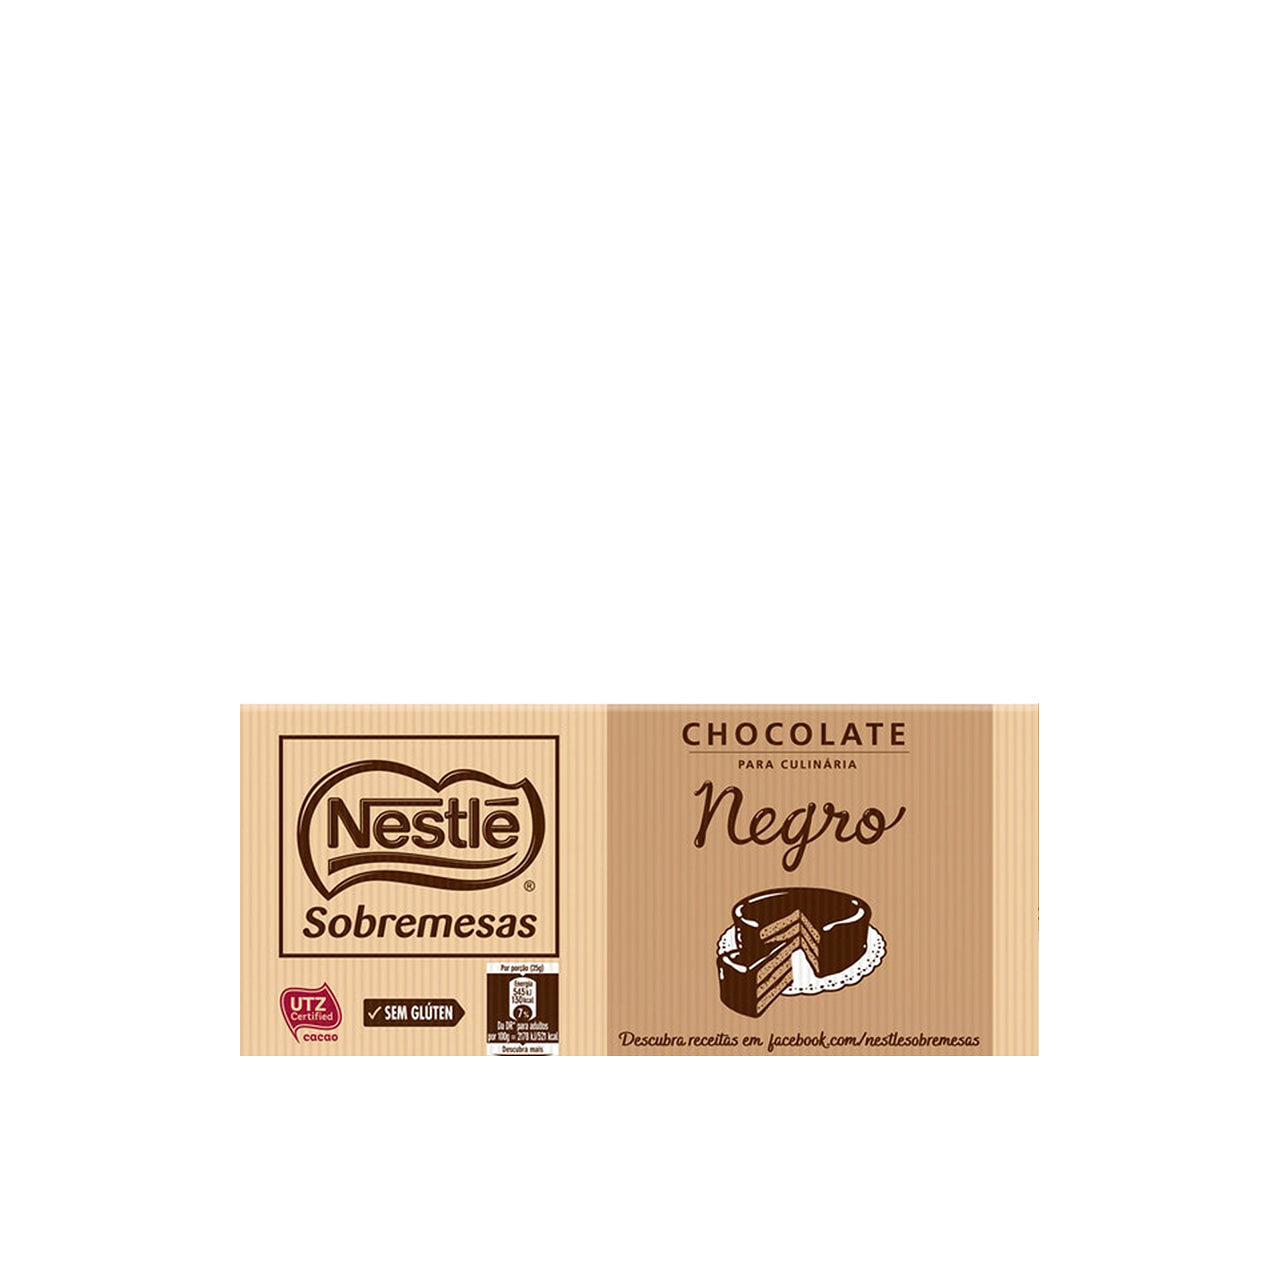 Nestlé Chocolate Culinária 44% Cacau 200 gr